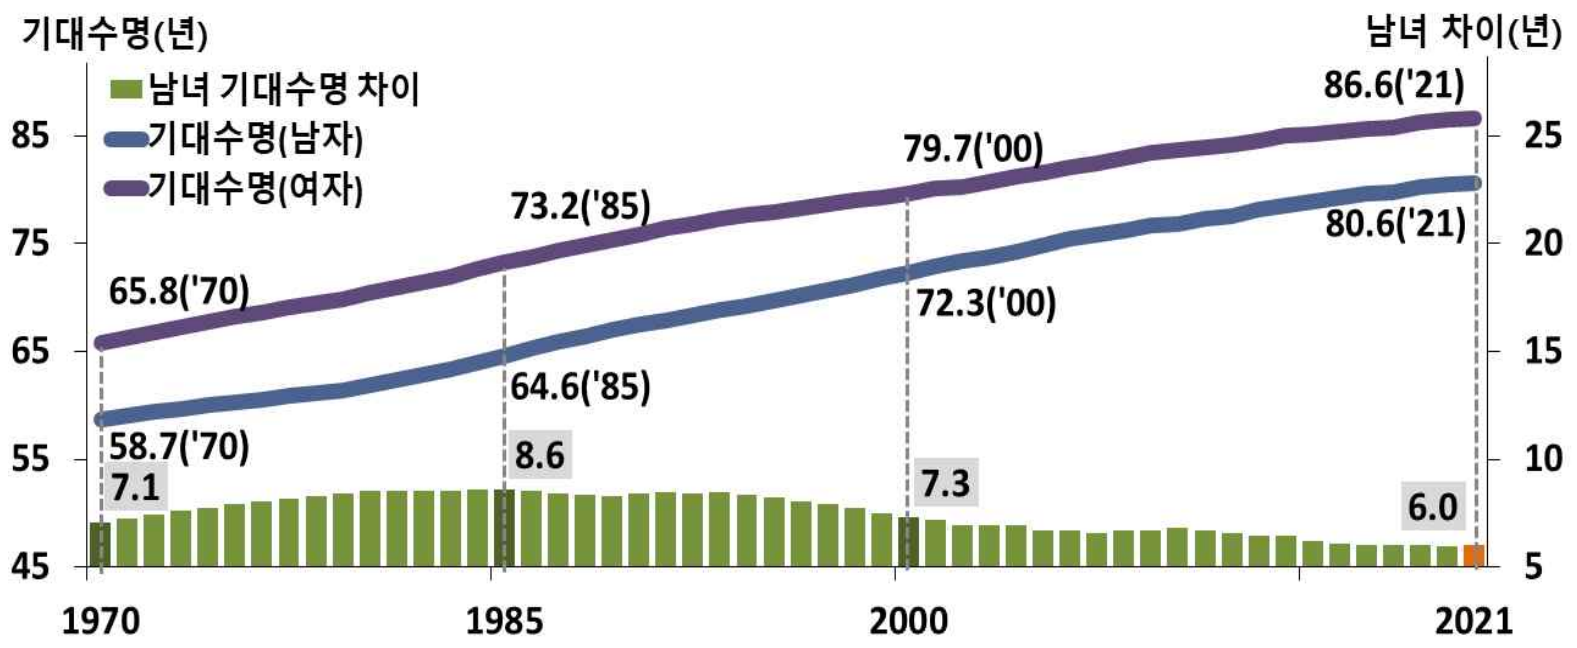 1970년부터 2021년까지 태어난 아기들의 기대수명을 알 수 있는 그래프